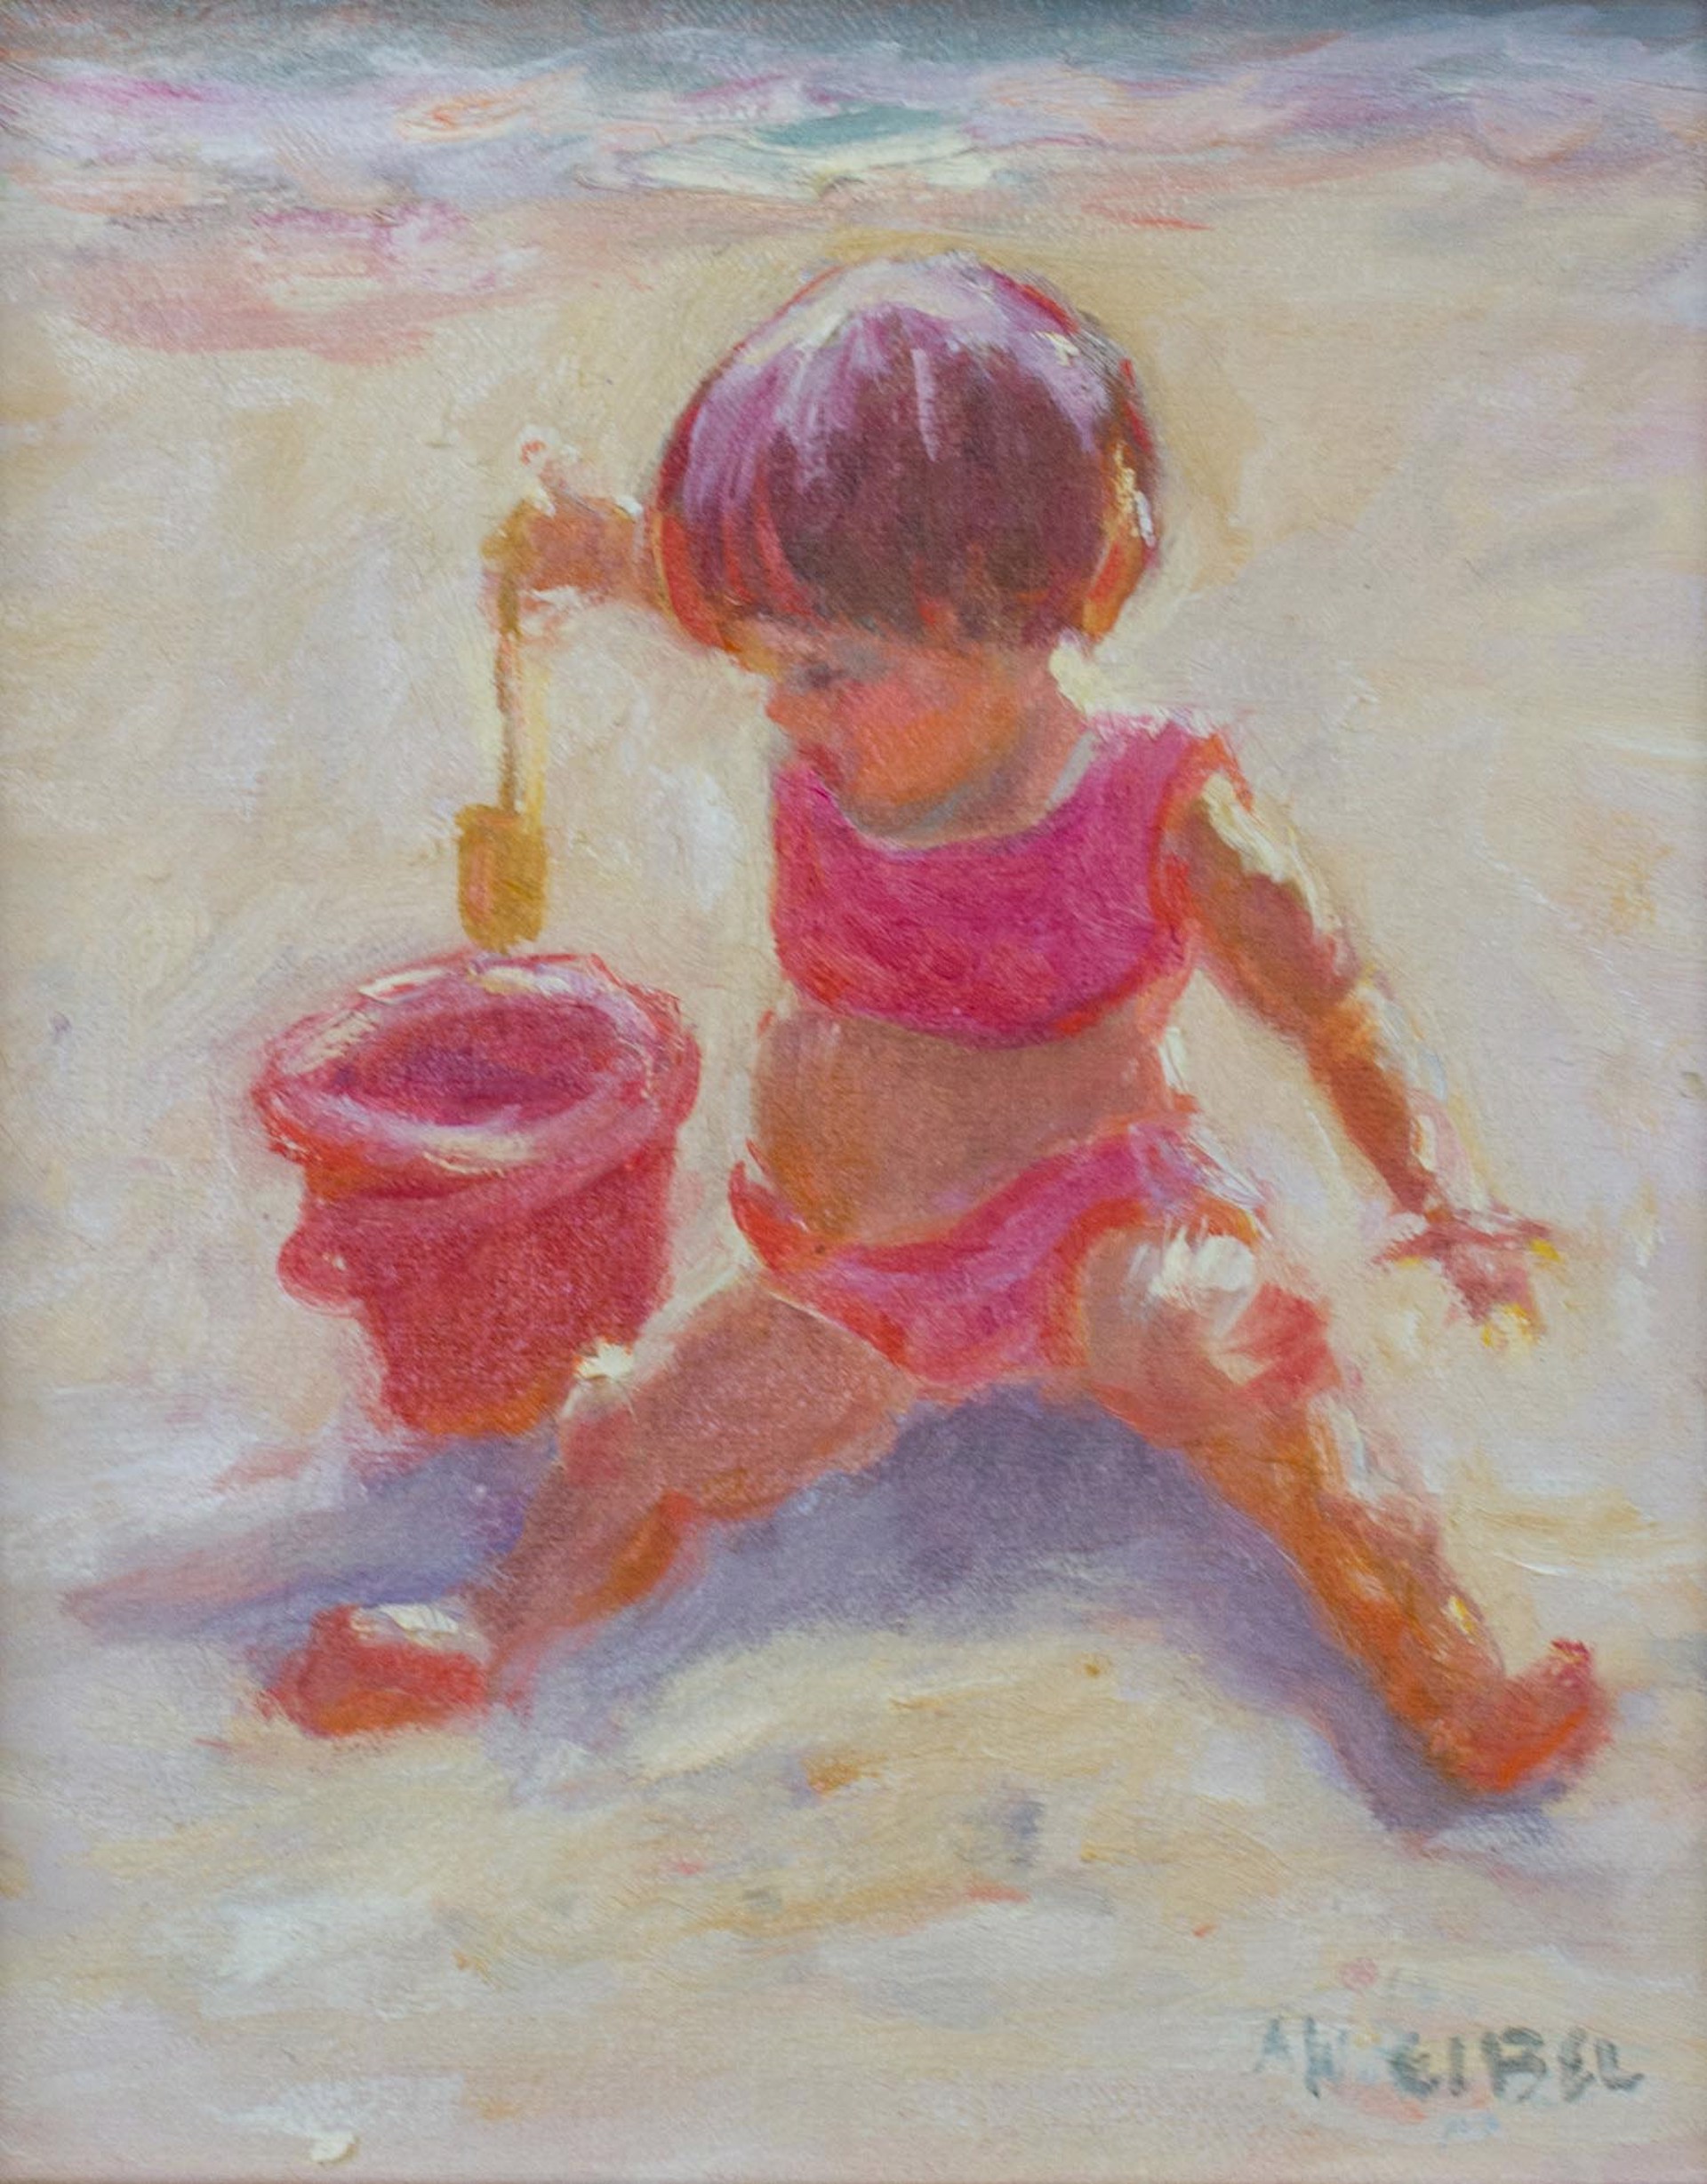 Beach Play by Ann Weibel